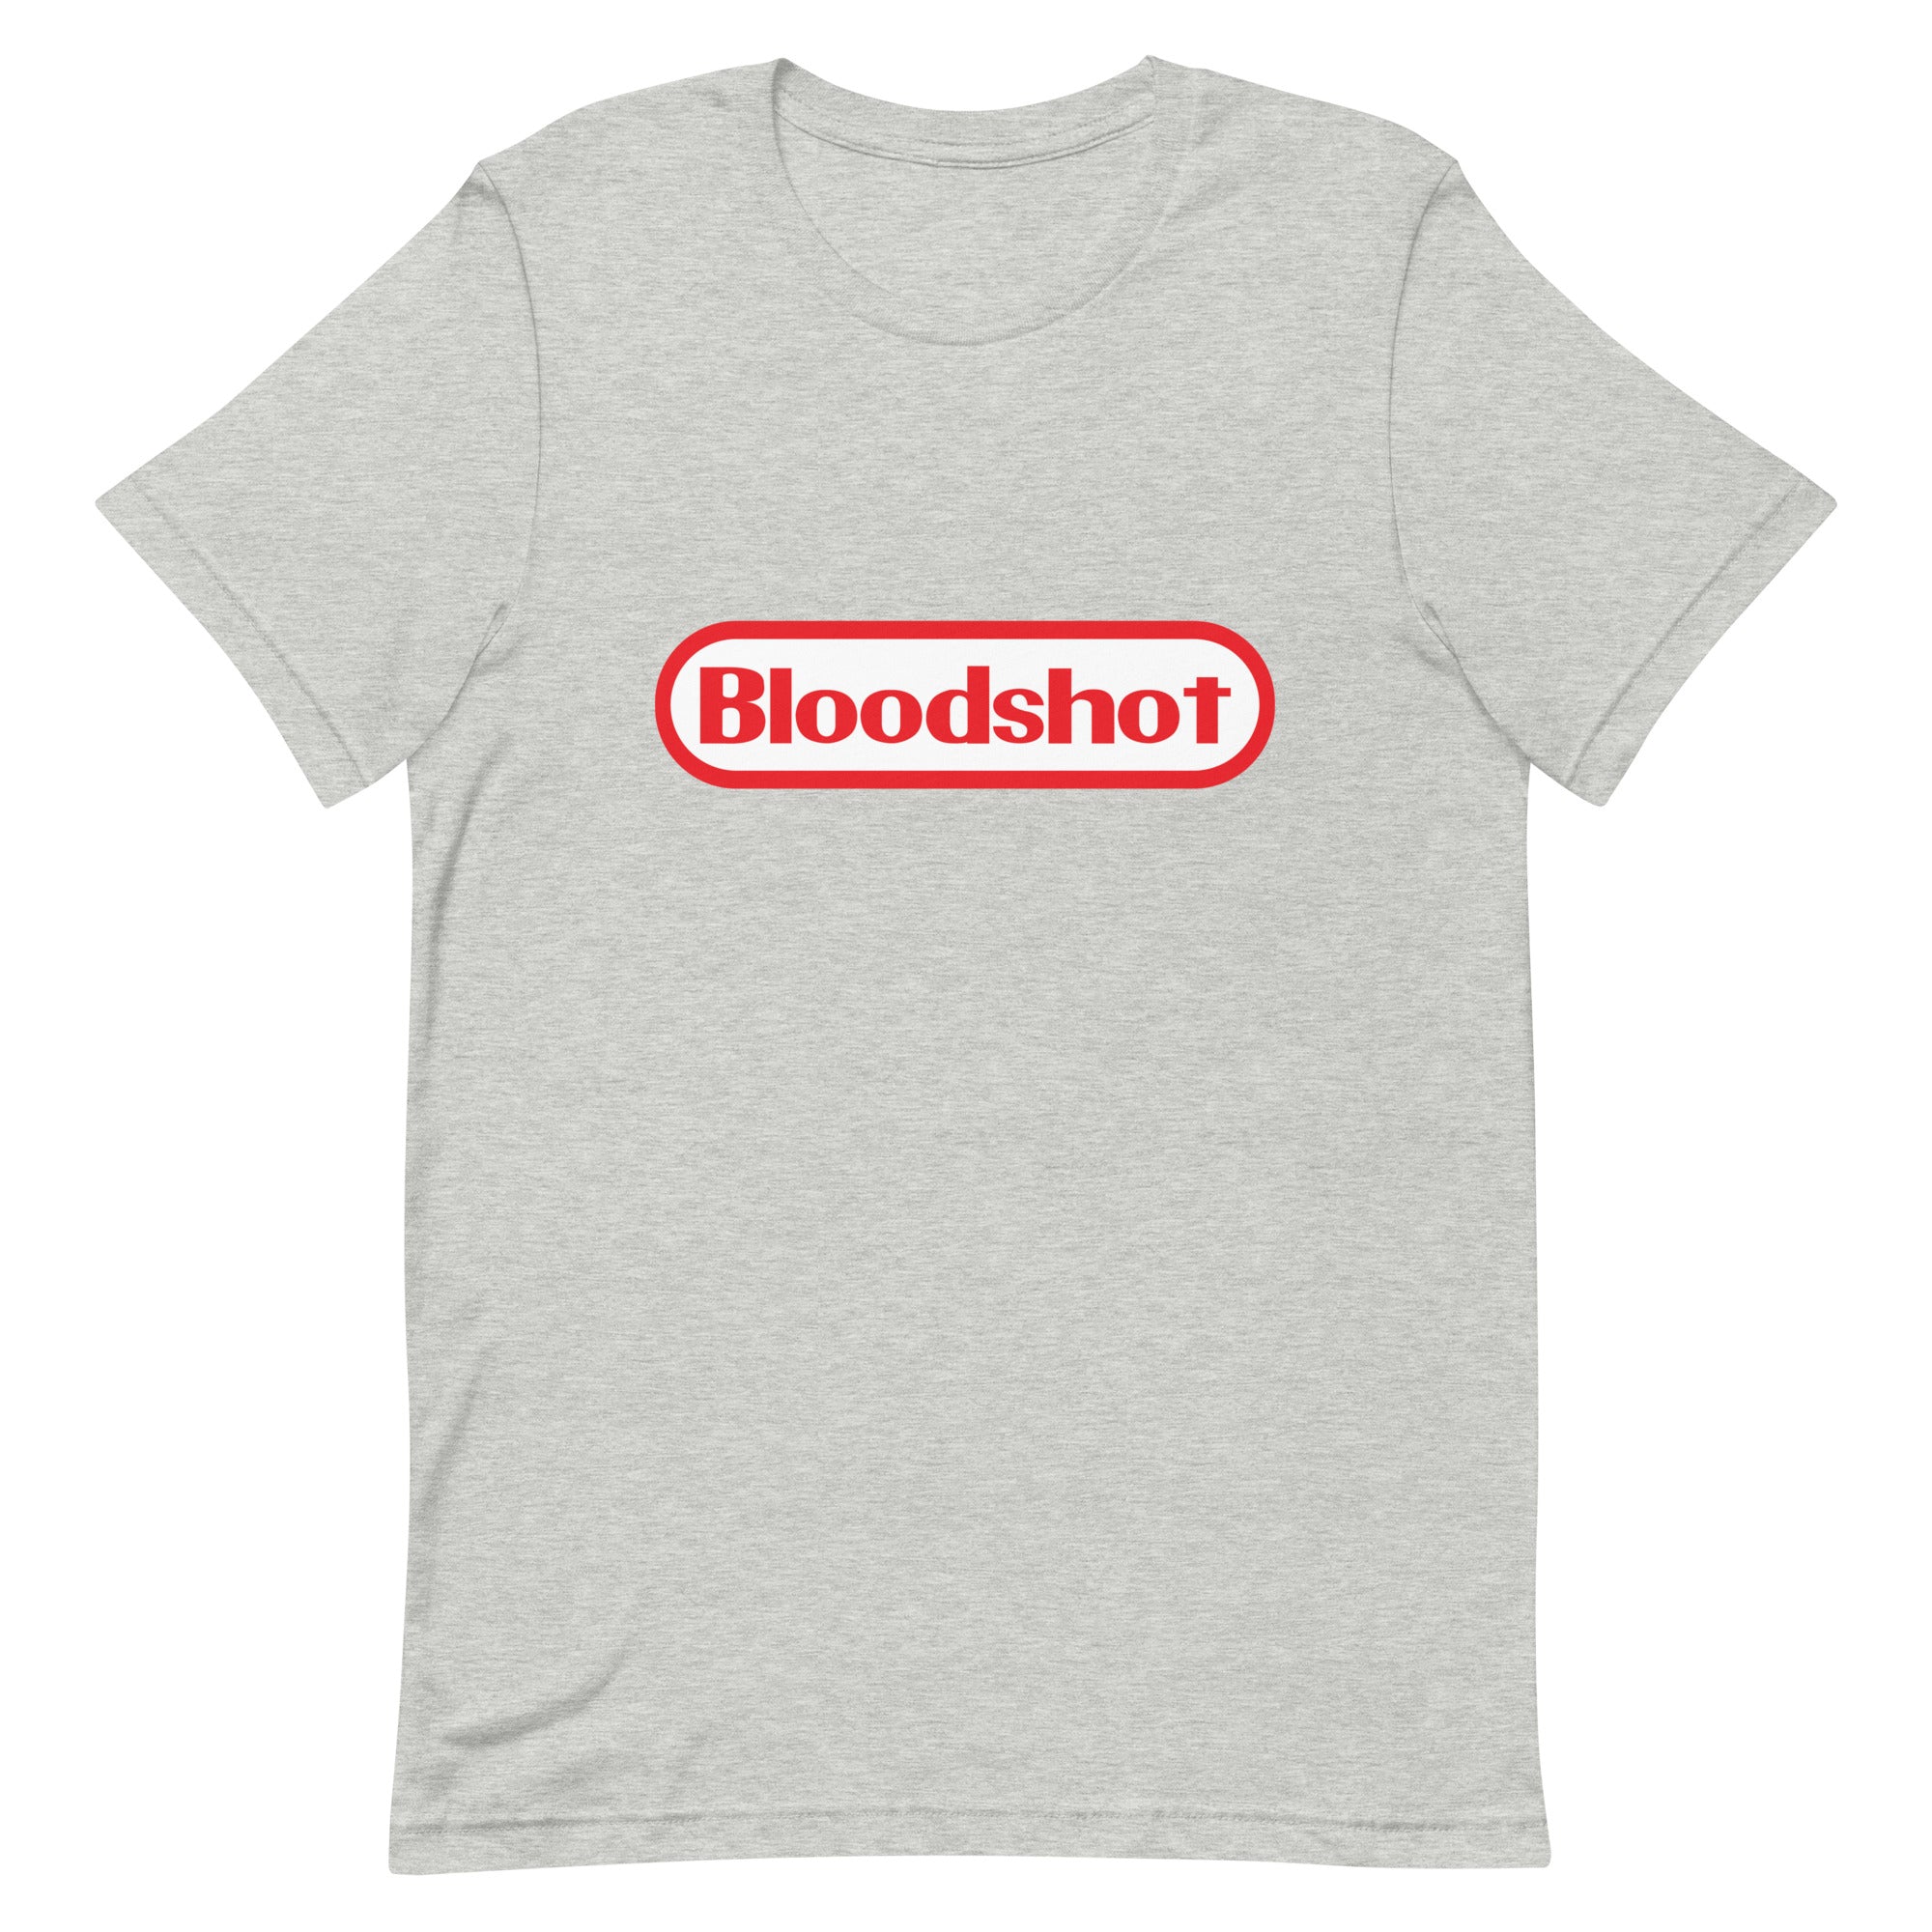 Bloodshot - Unisex t-shirt